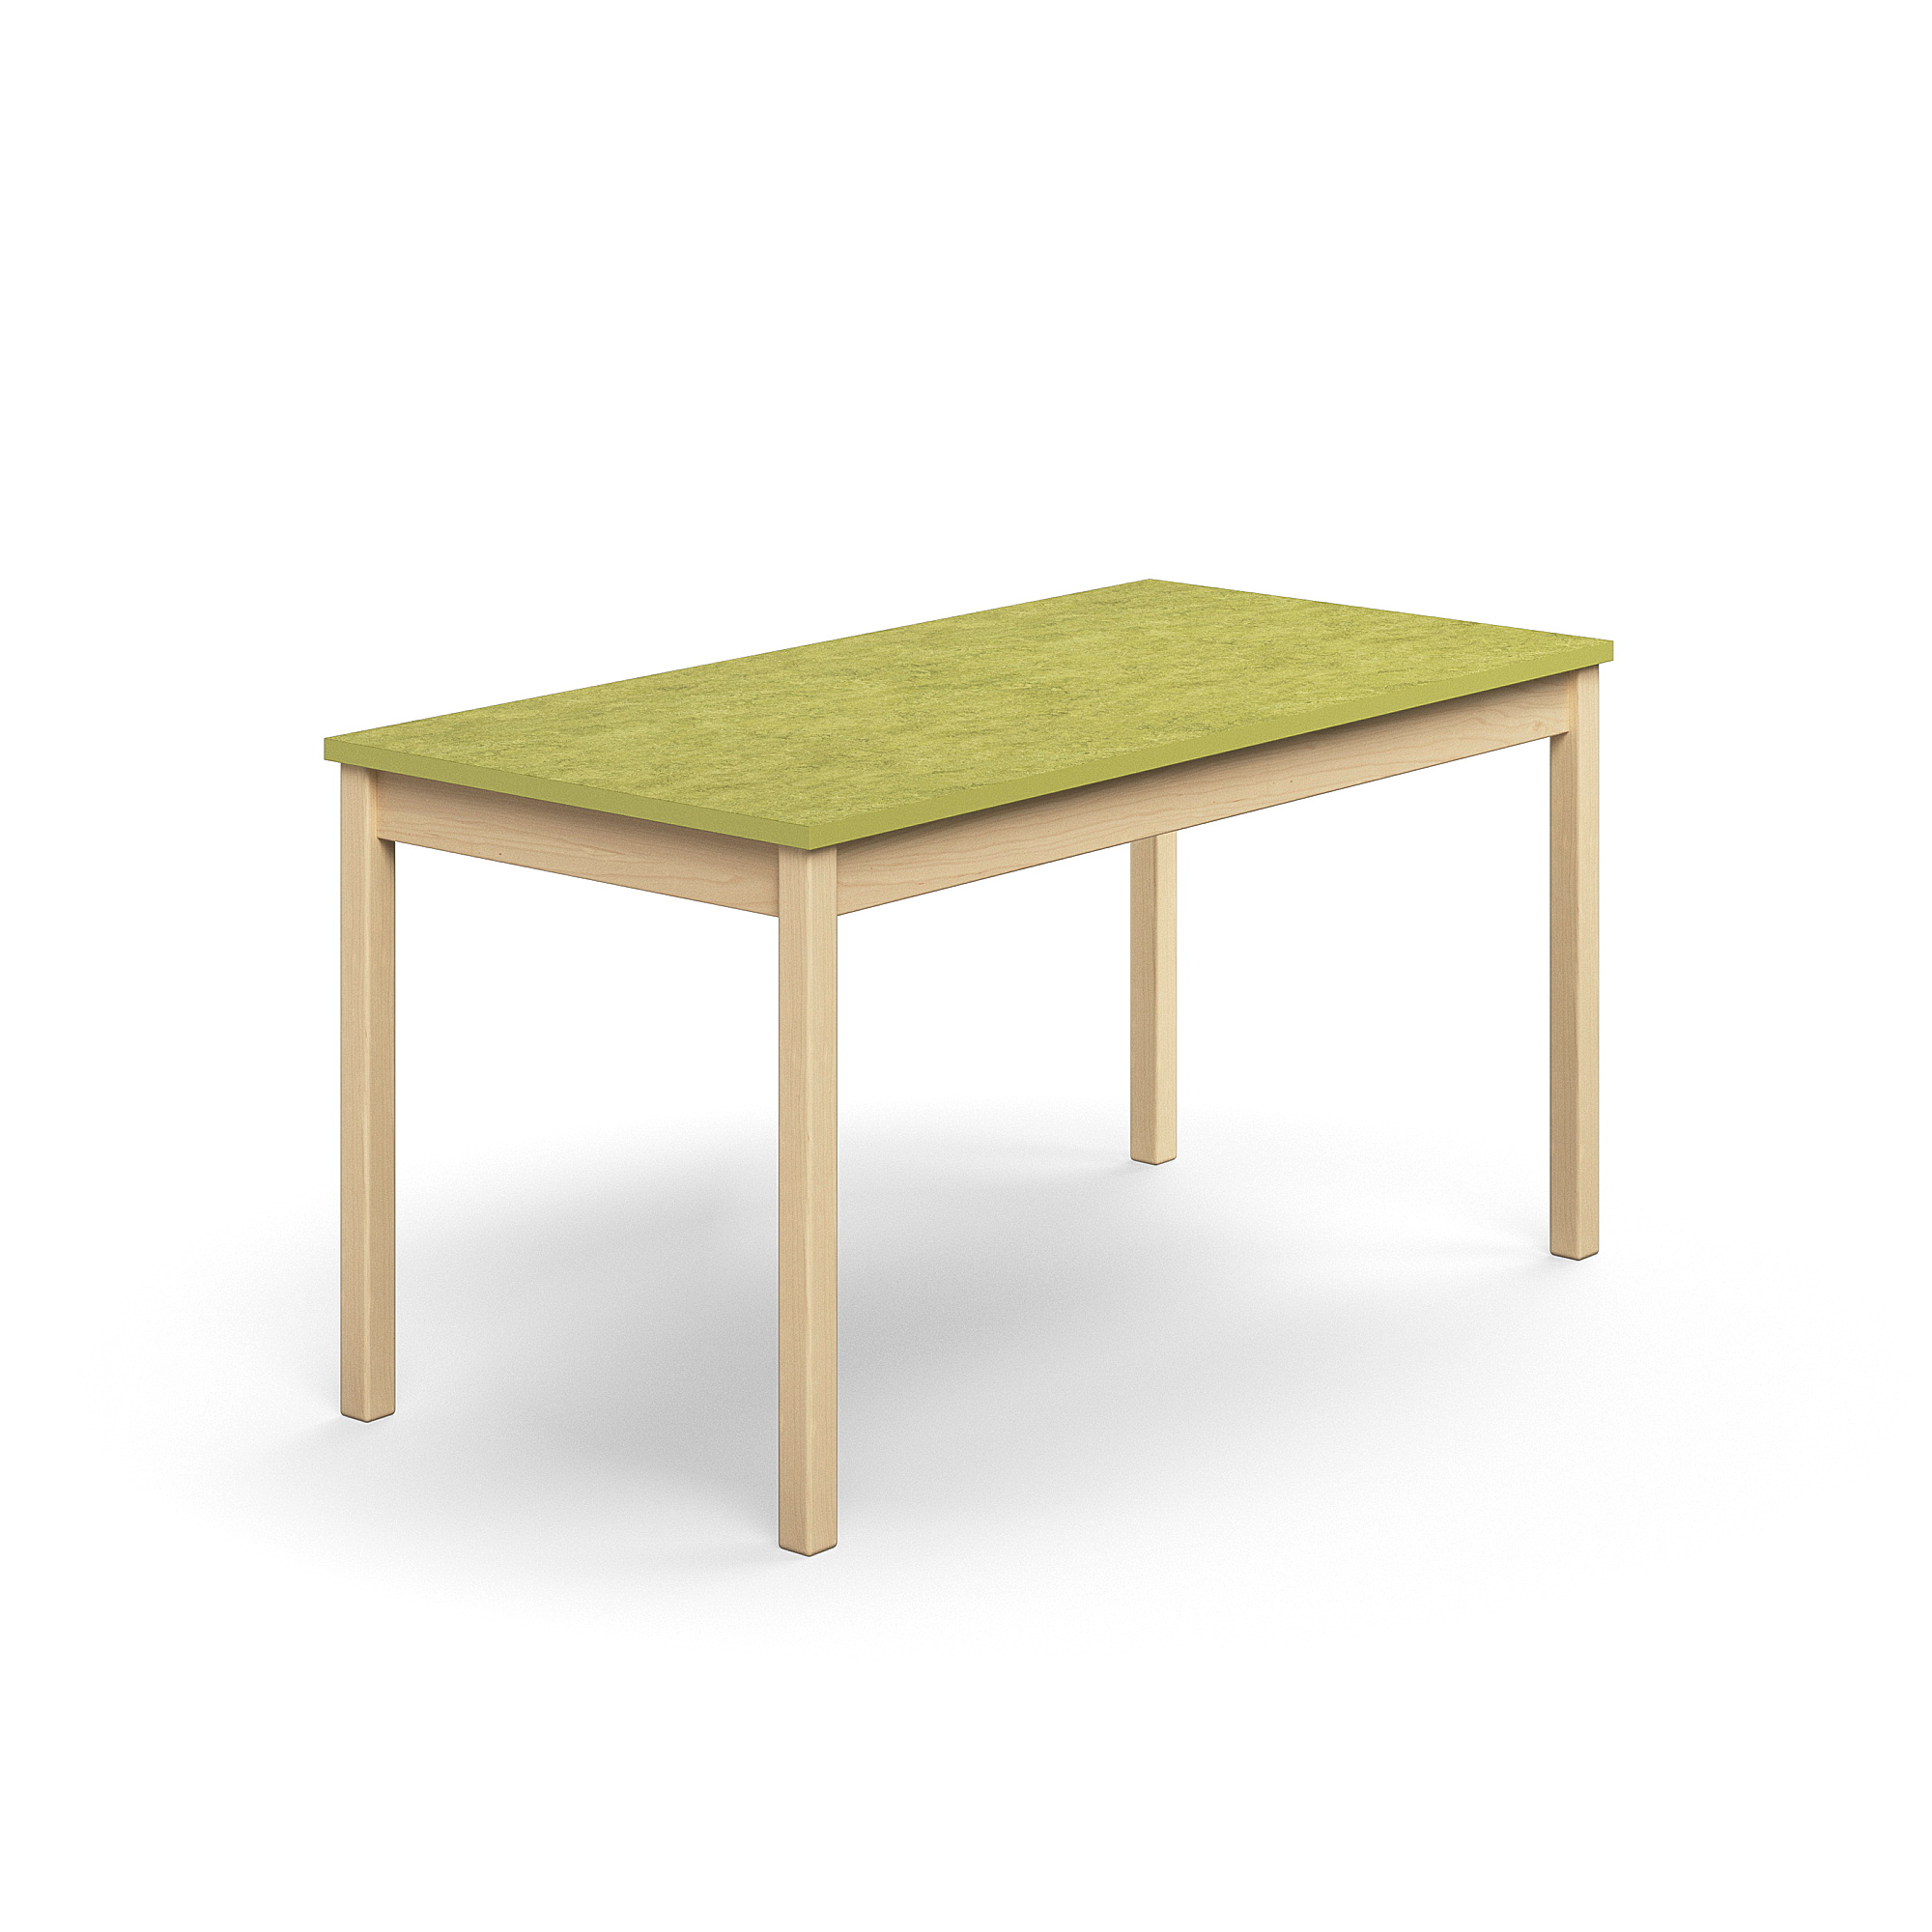 Stůl DECIBEL, 1400x700x720 mm, akustické linoleum, bříza/limetkově zelená